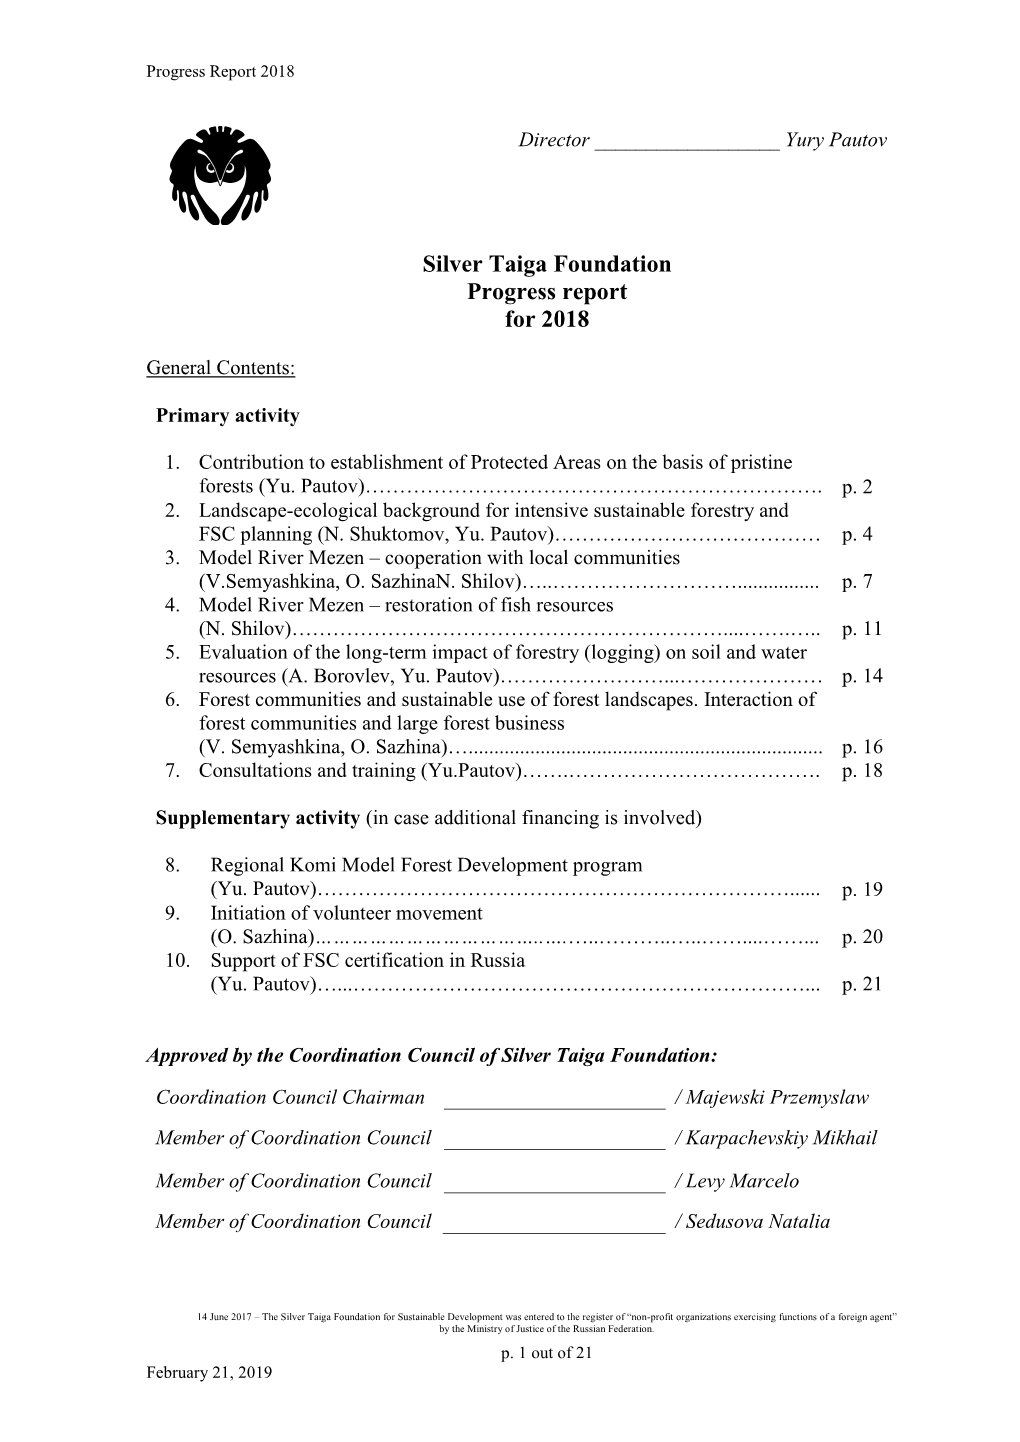 Silver Taiga Foundation Progress Report for 2018